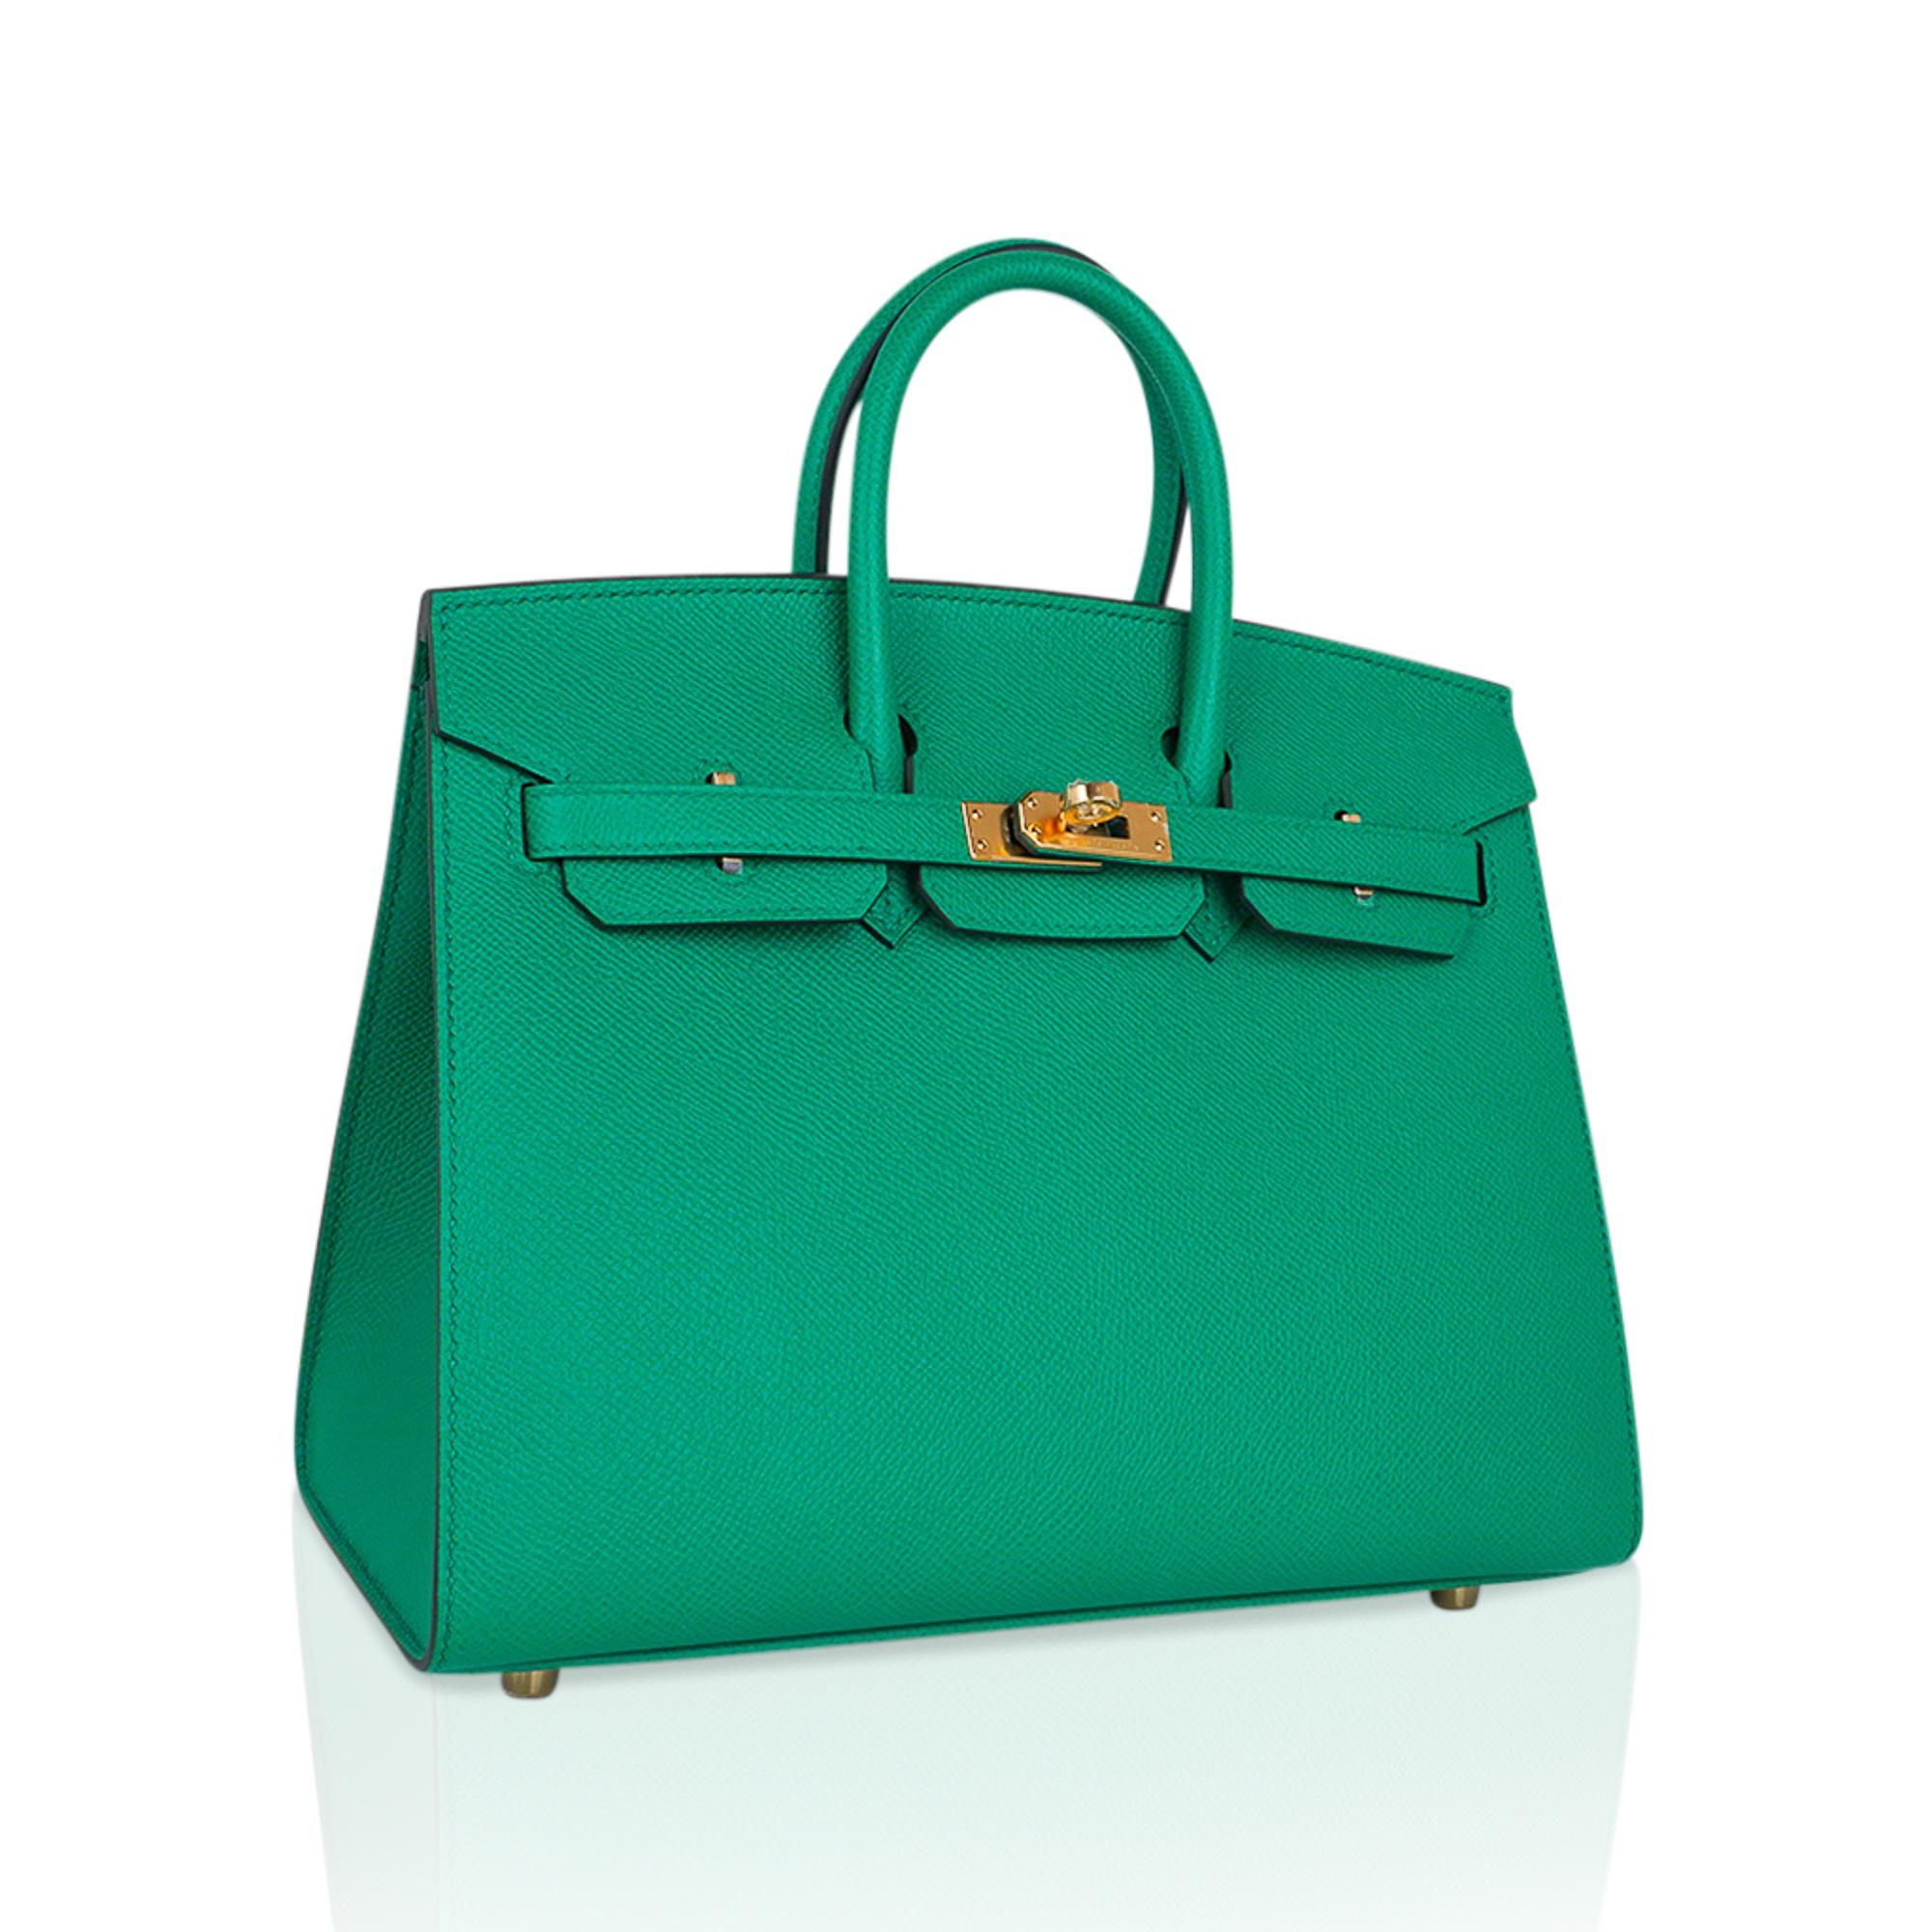 Mightychic propose un sac Hermes Birkin Sellier 25 dans le coloris convoité Vert Jade.
Luxueux avec des ferrures dorées.
Ce sac exquis est moderne et minimaliste.
Une version épurée qui respire la sophistication chic.
Le cuir d'Epsom et les bords